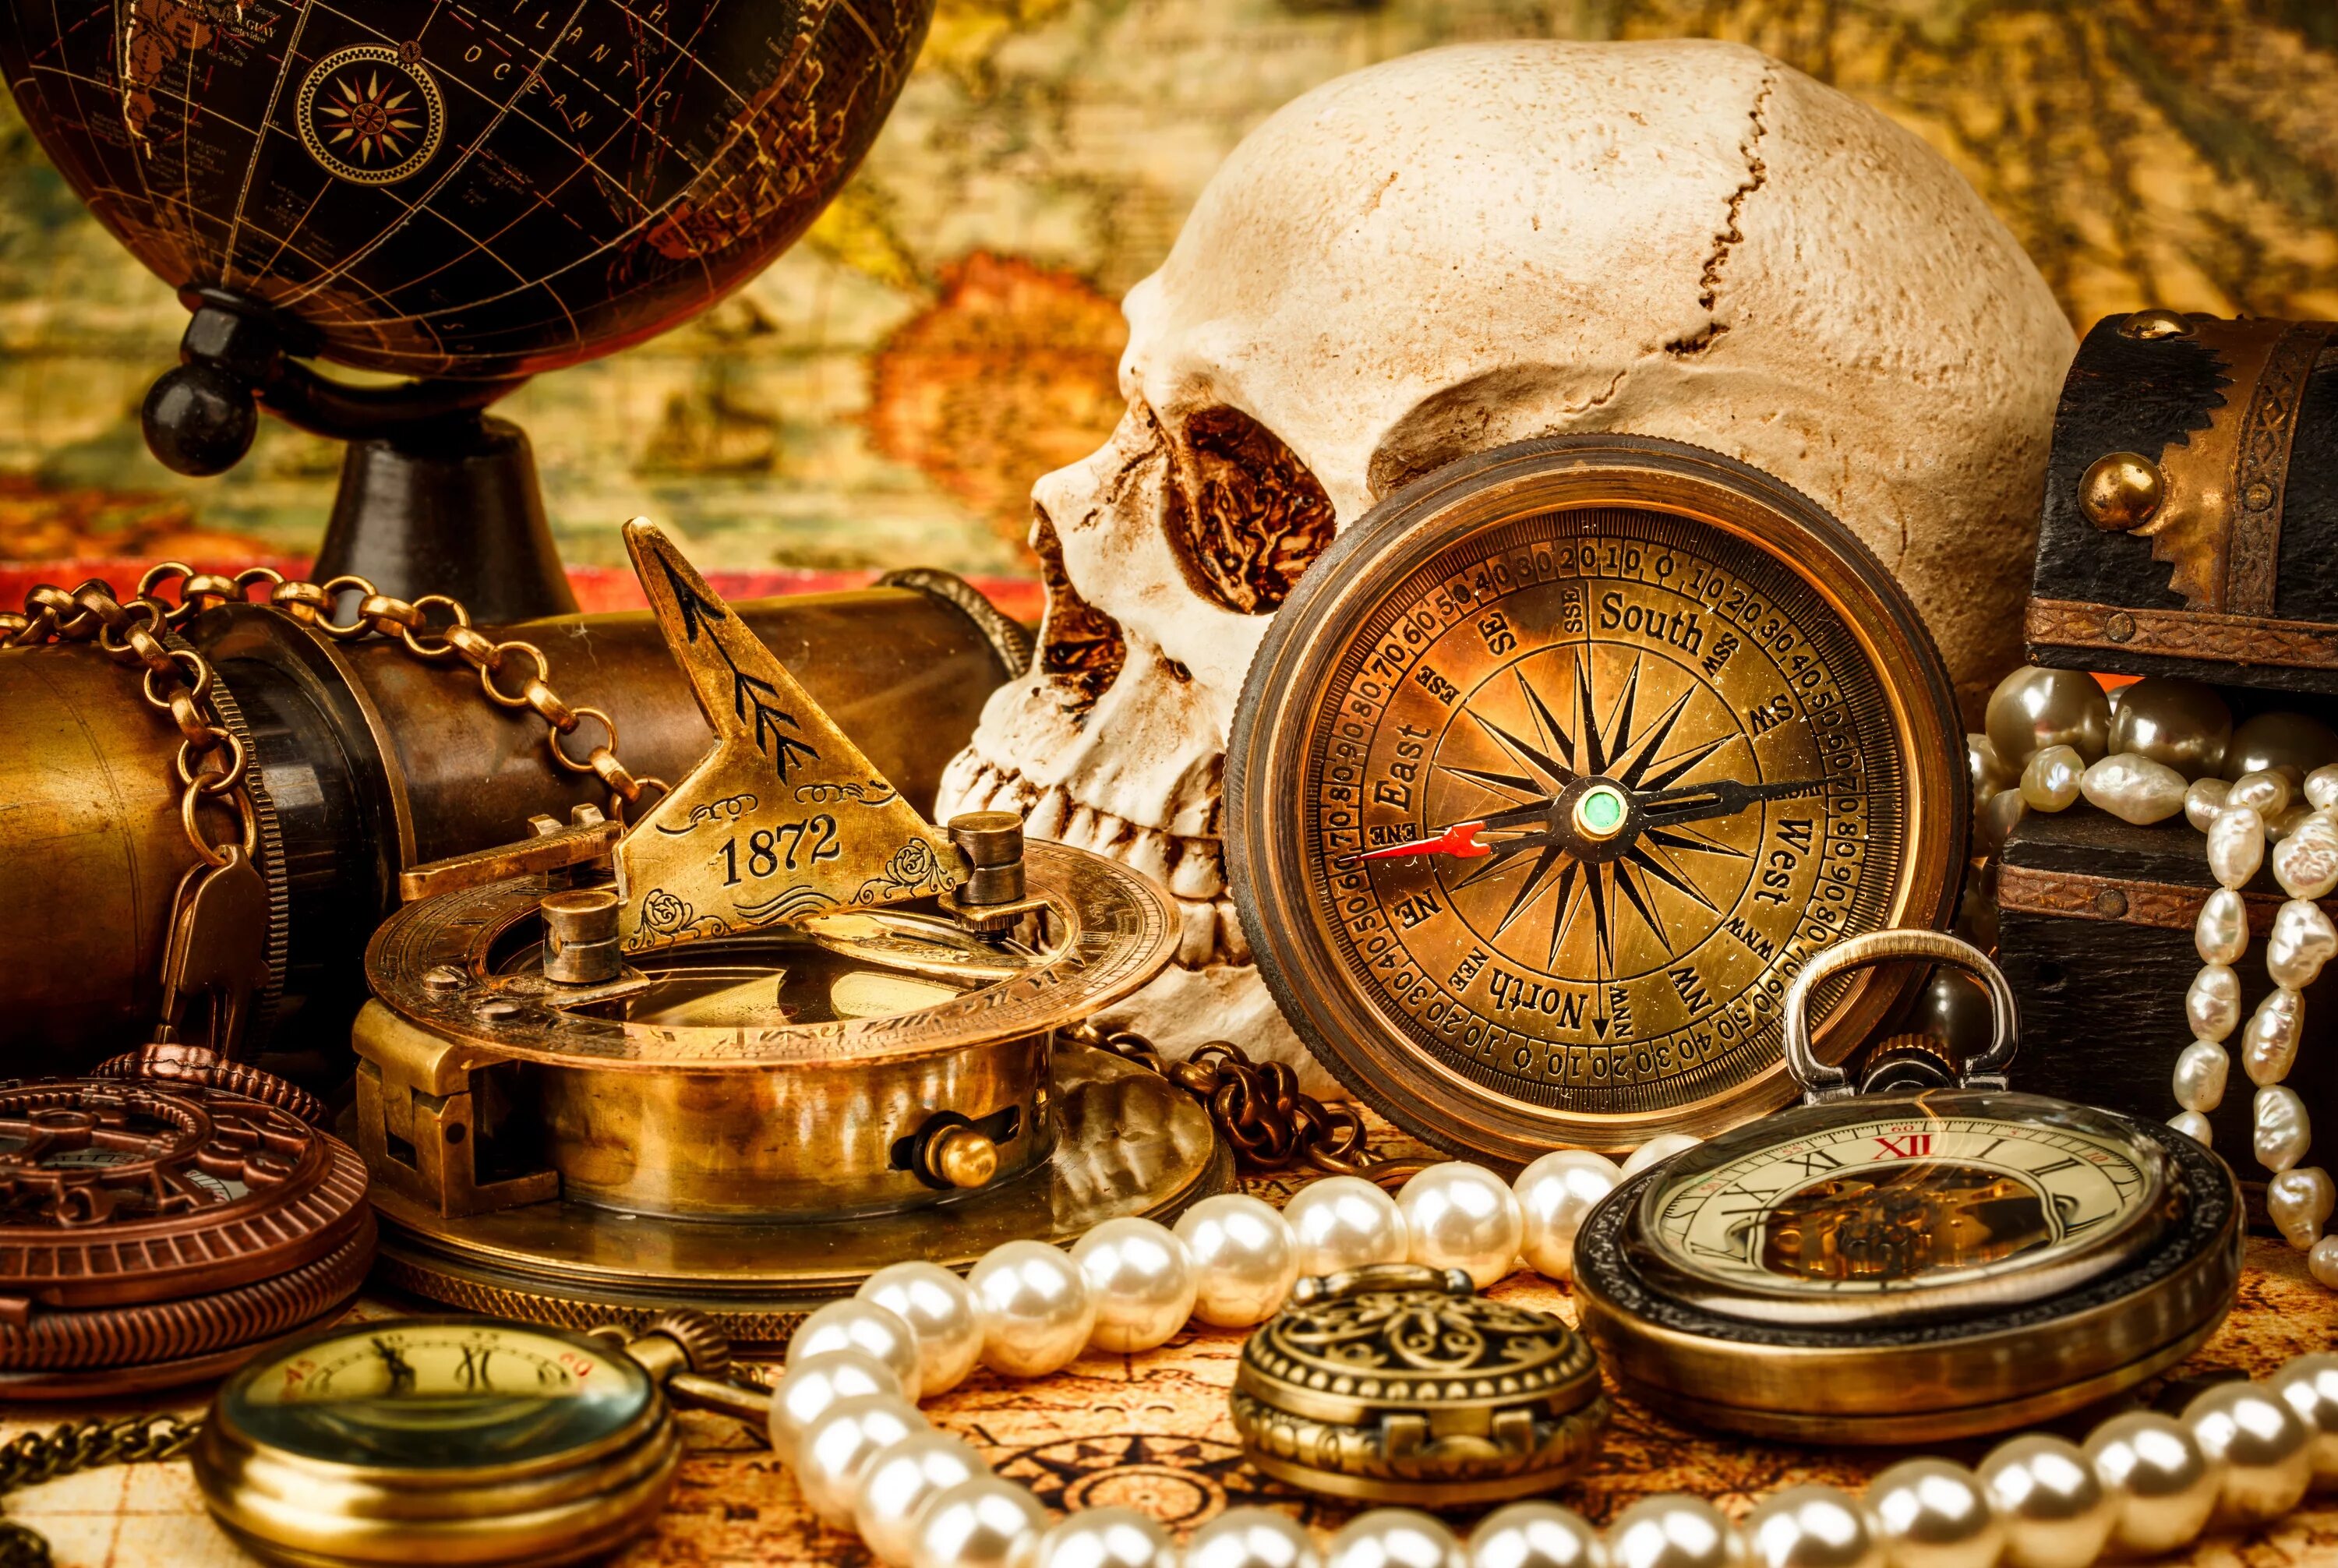 Старинные часы. Старинный компас. Пиратские сокровища. Натюрморт с часами.